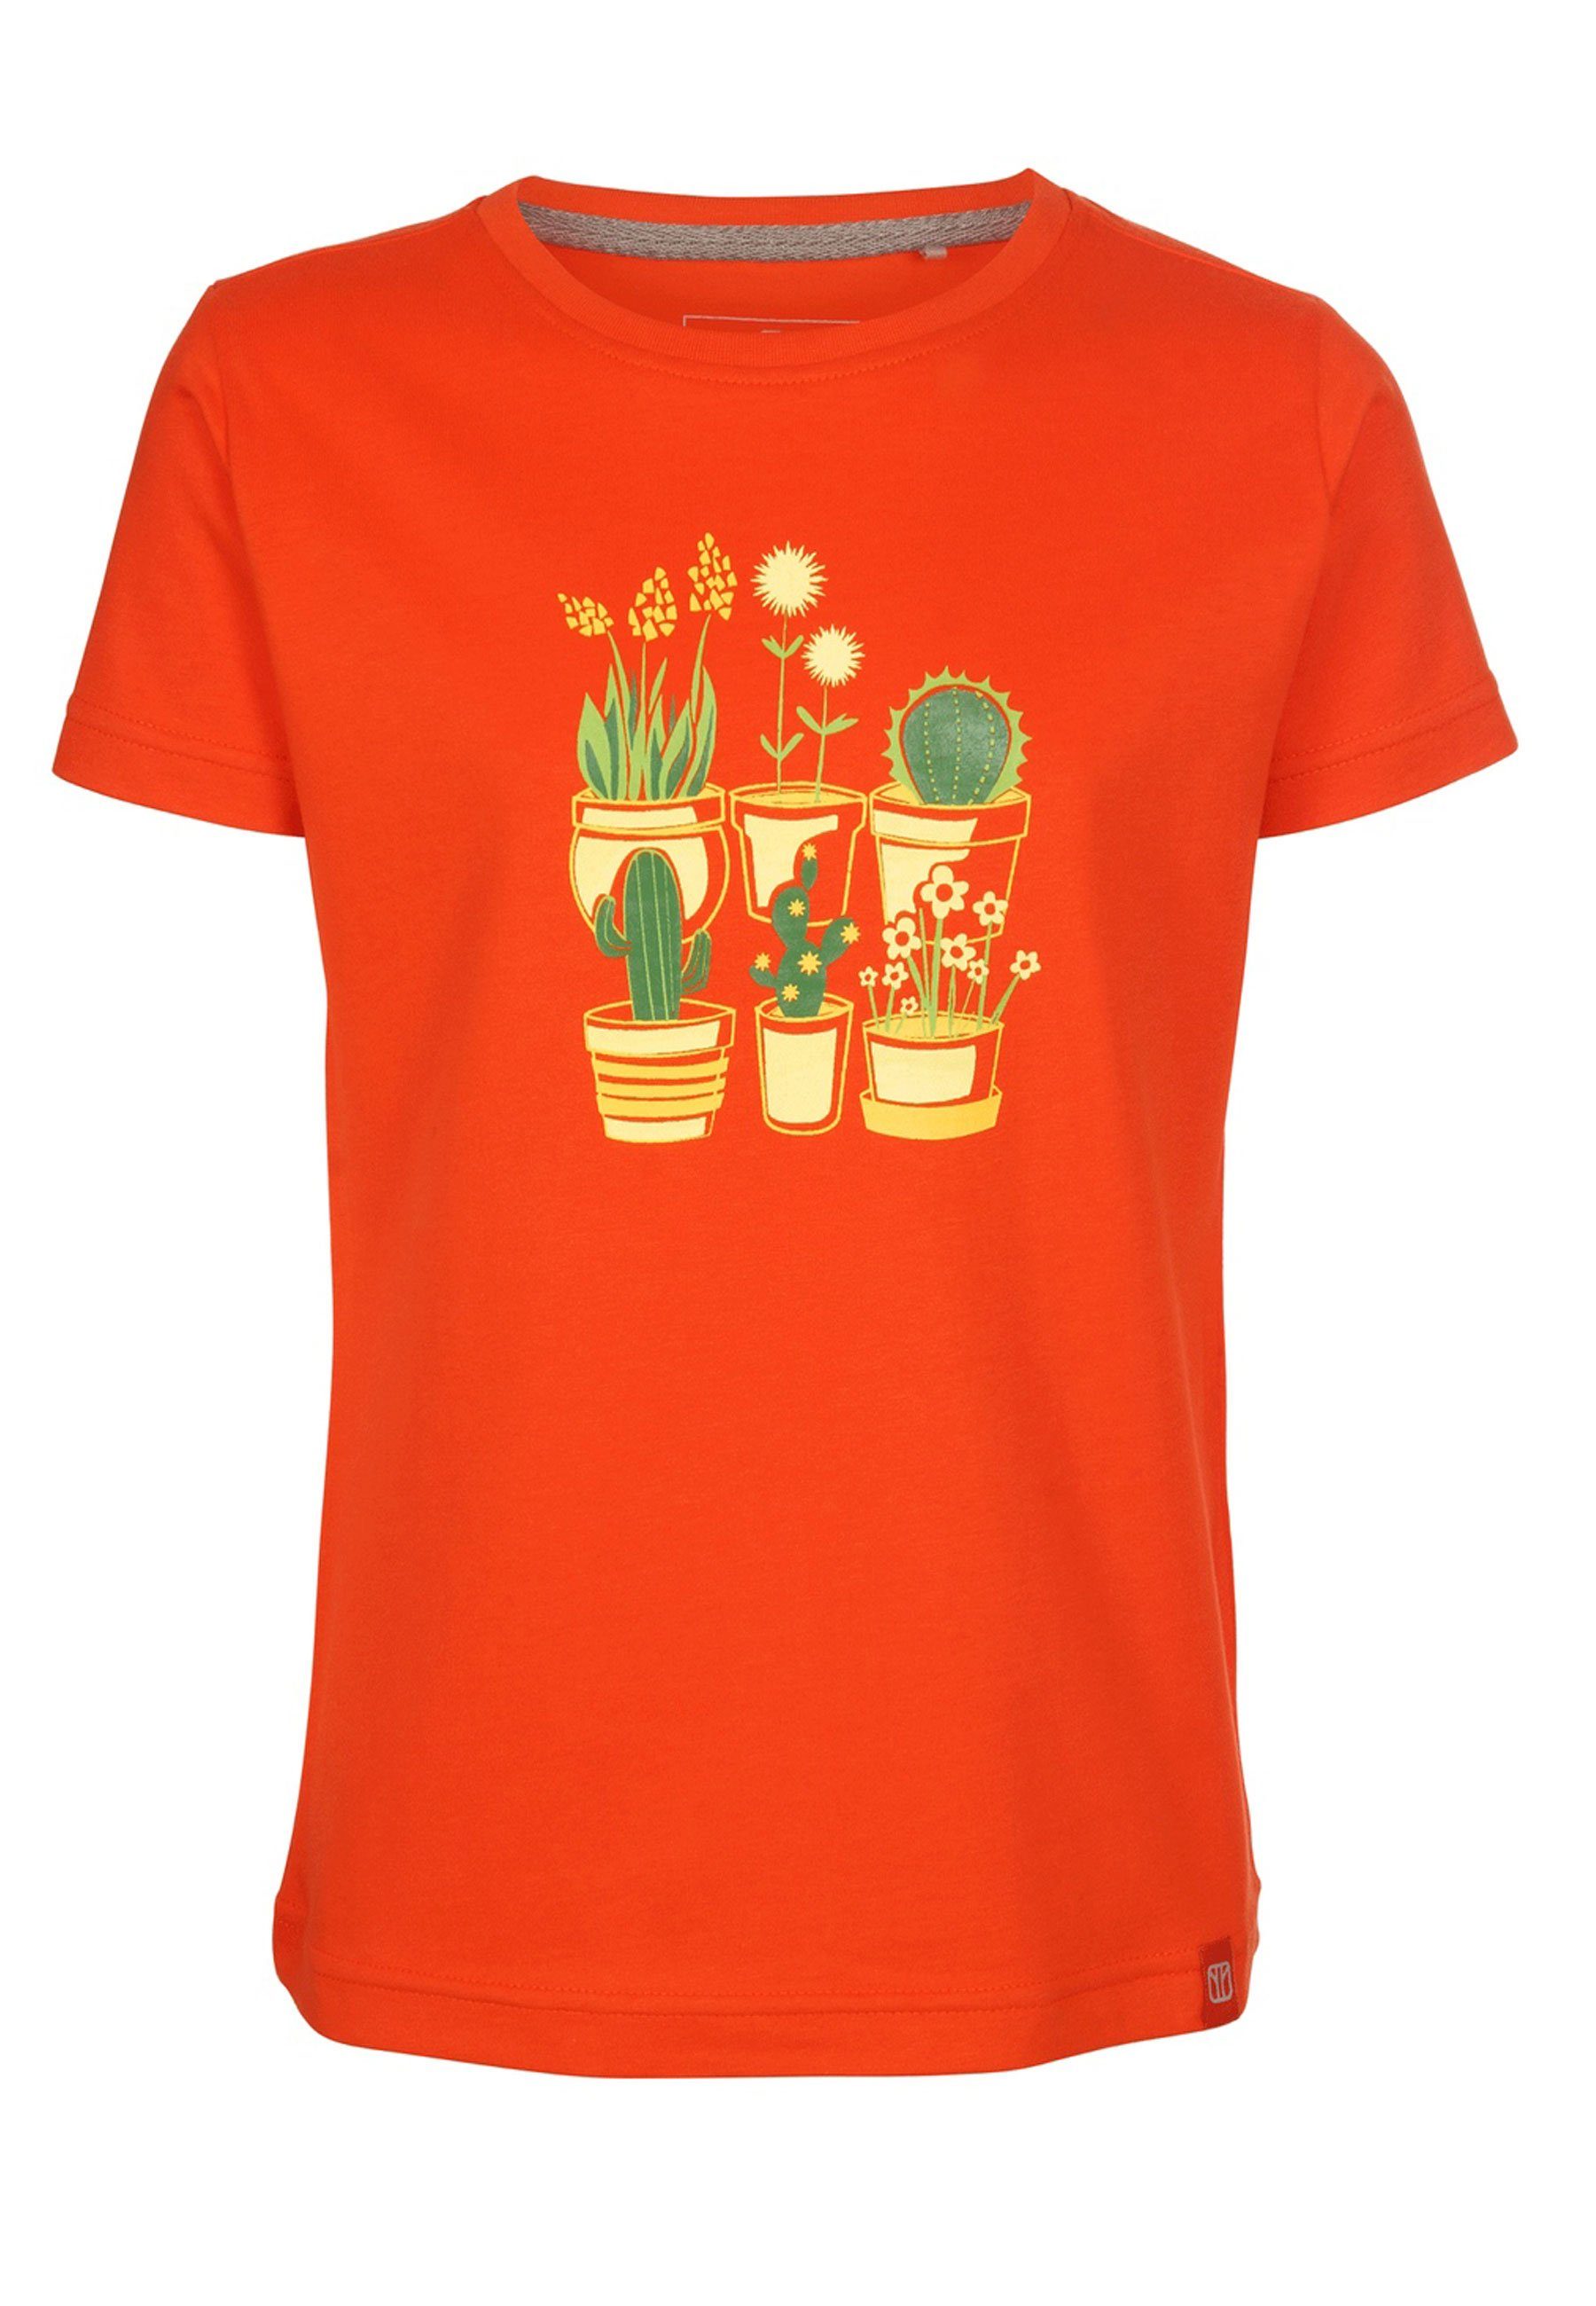 Brust Plantsarefriends Elkline Kurzarm cherrytomato Jersey Blumen T-Shirt Print Kaktus